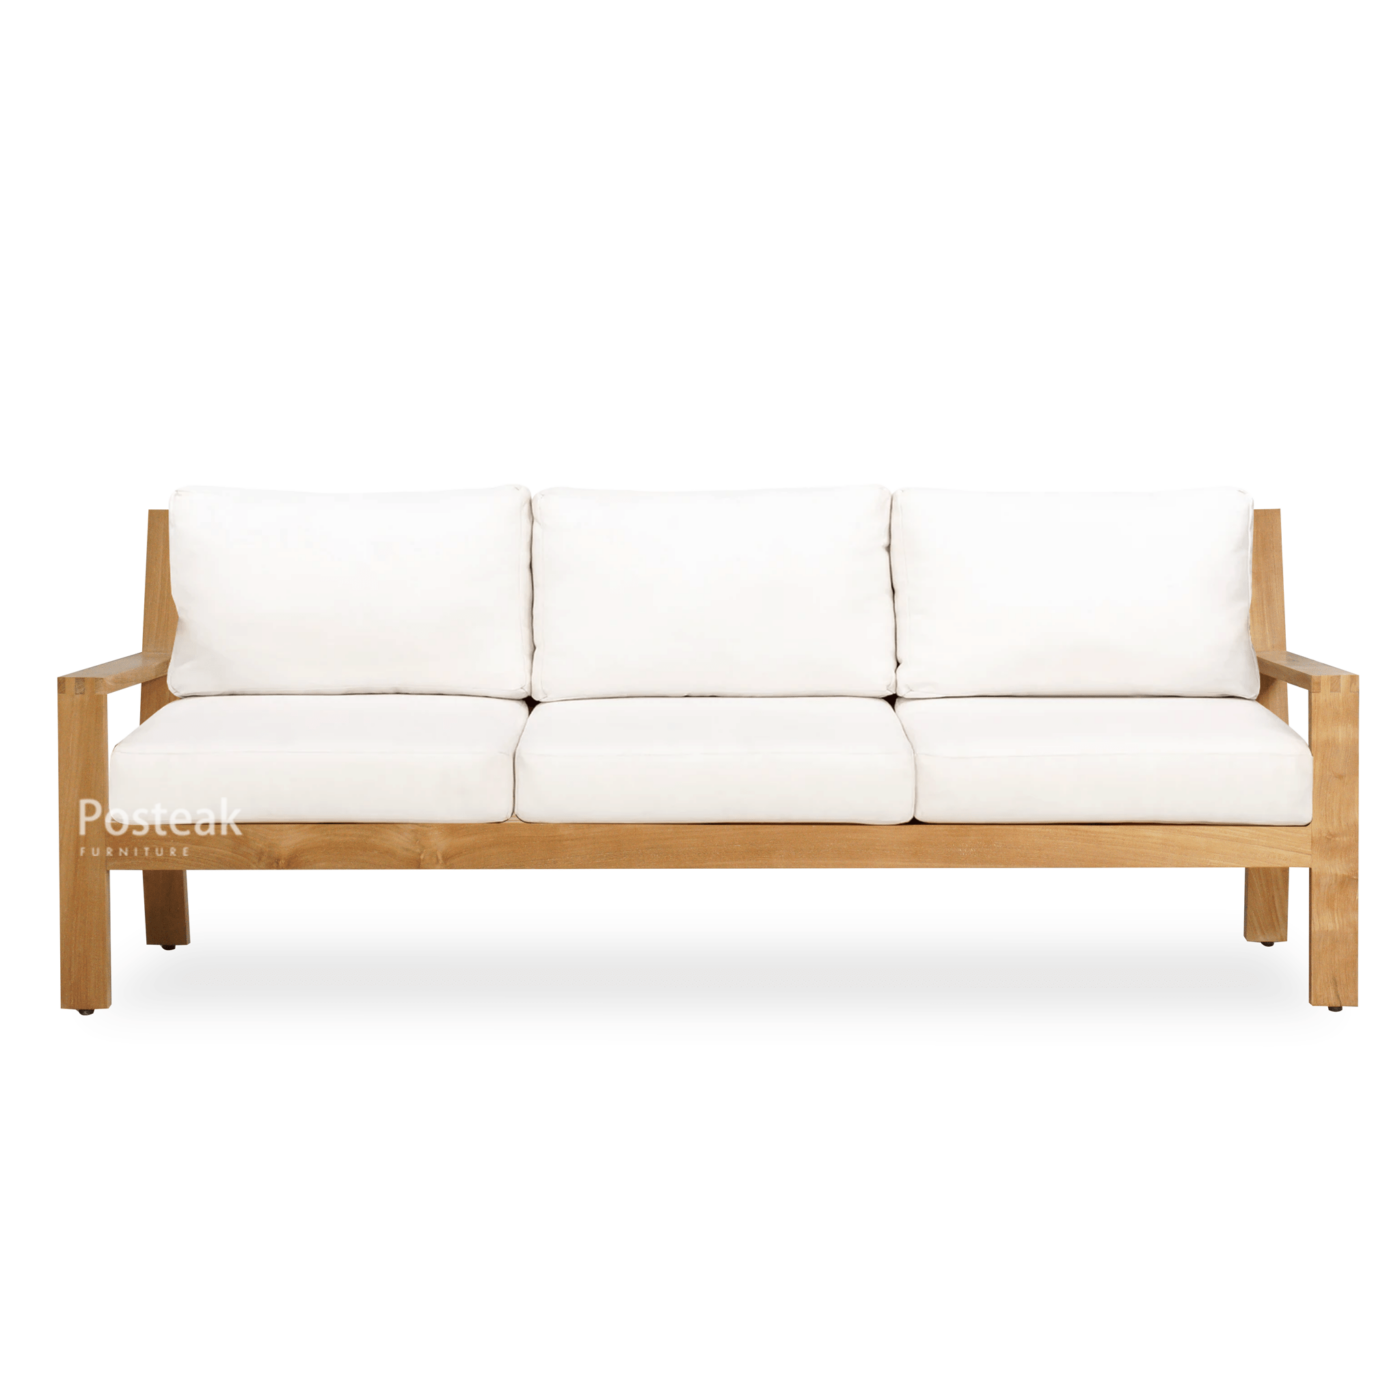 charleston-teak outdoor-sofa